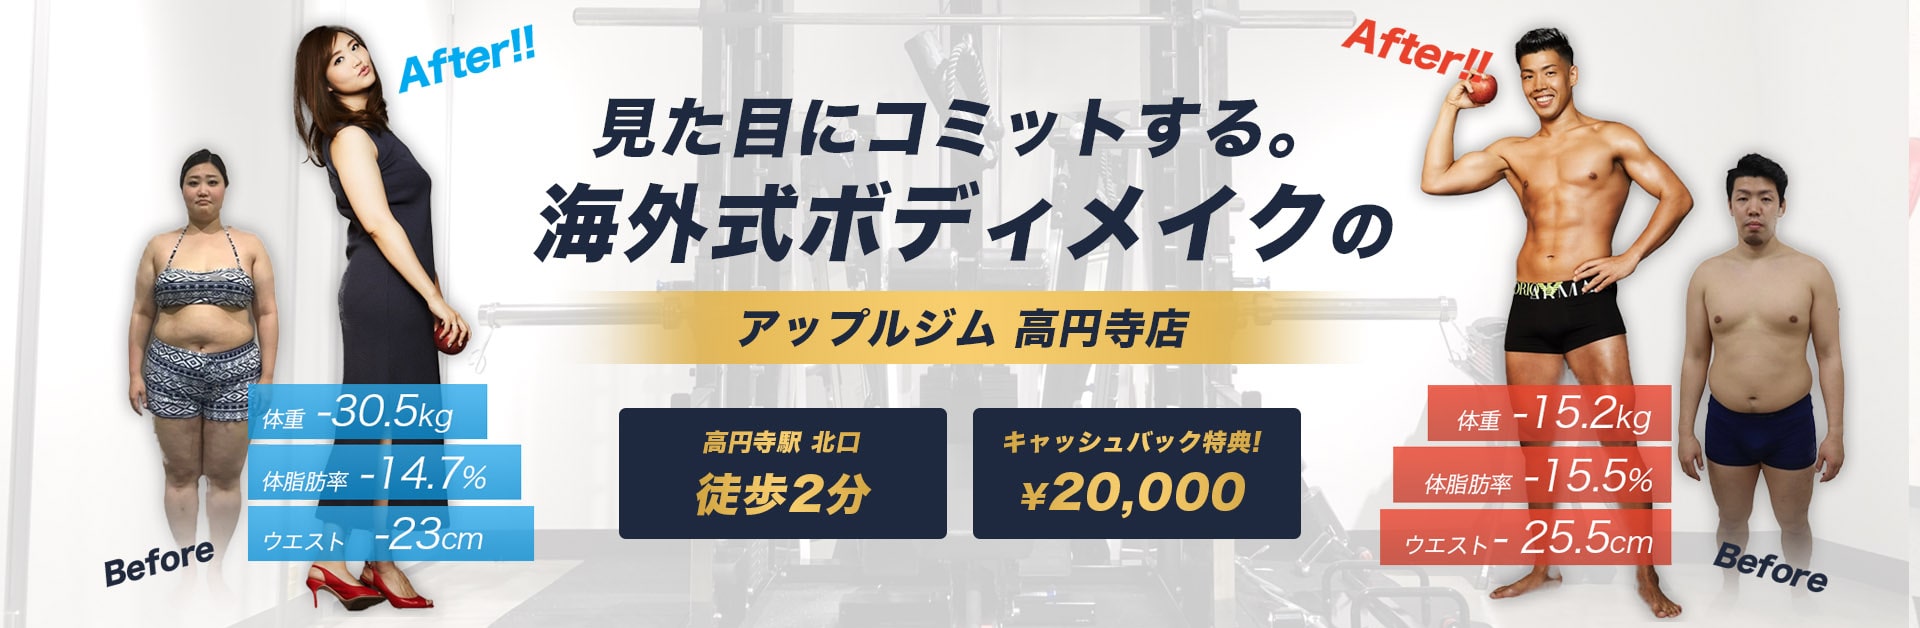 21 高円寺おすすめのスポーツジムランキング10選 口コミ付